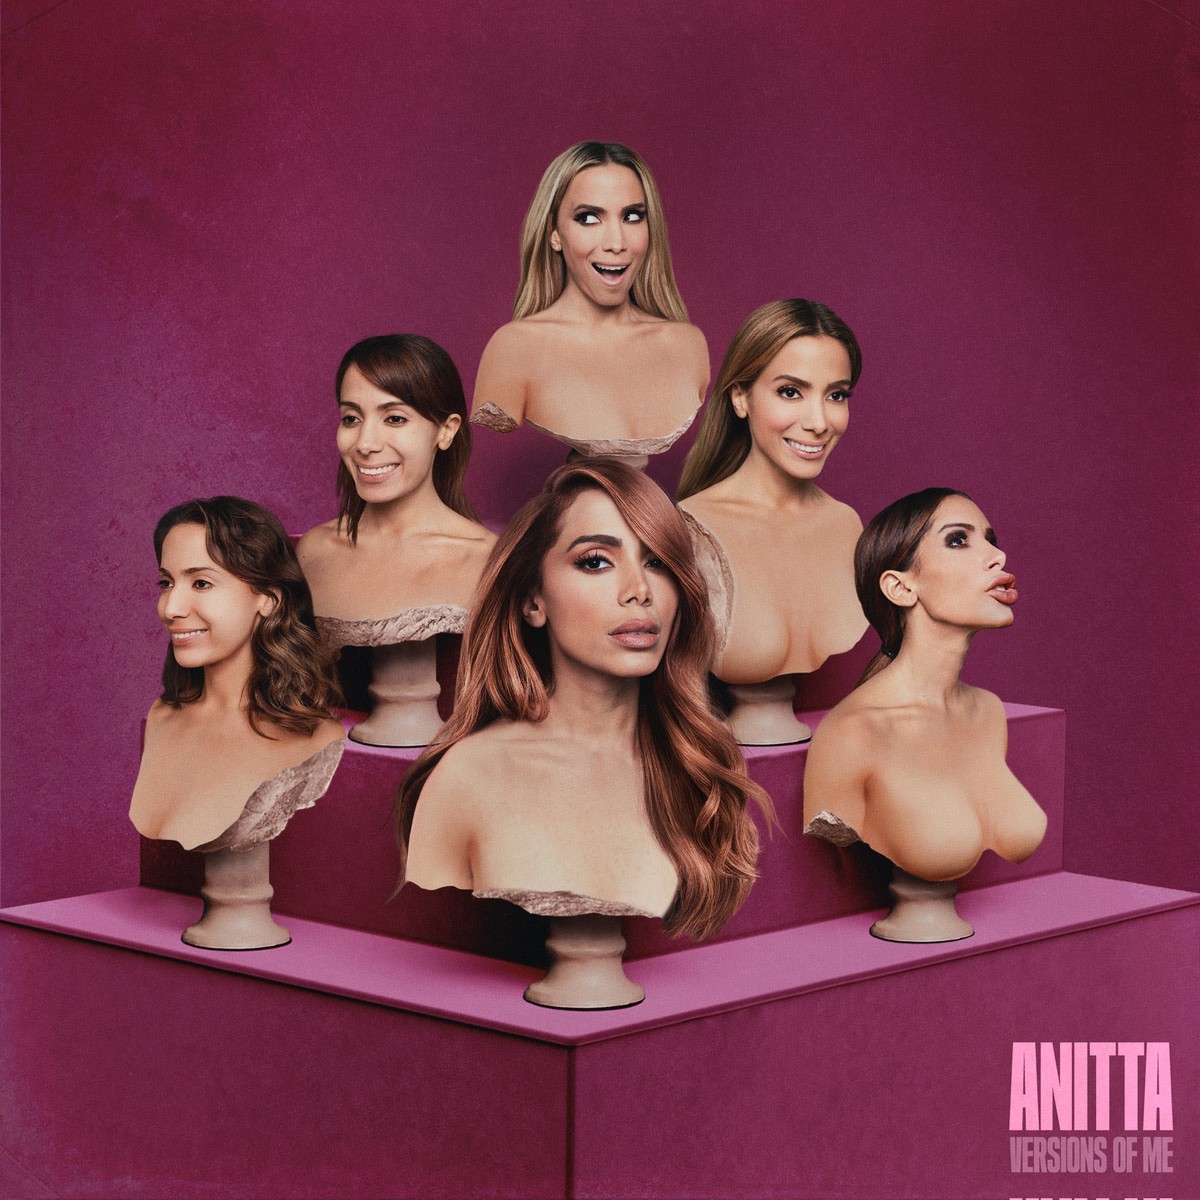 Anitta lança seu novo álbum 'Versions Of Me' e mostra toda sua versatilidade